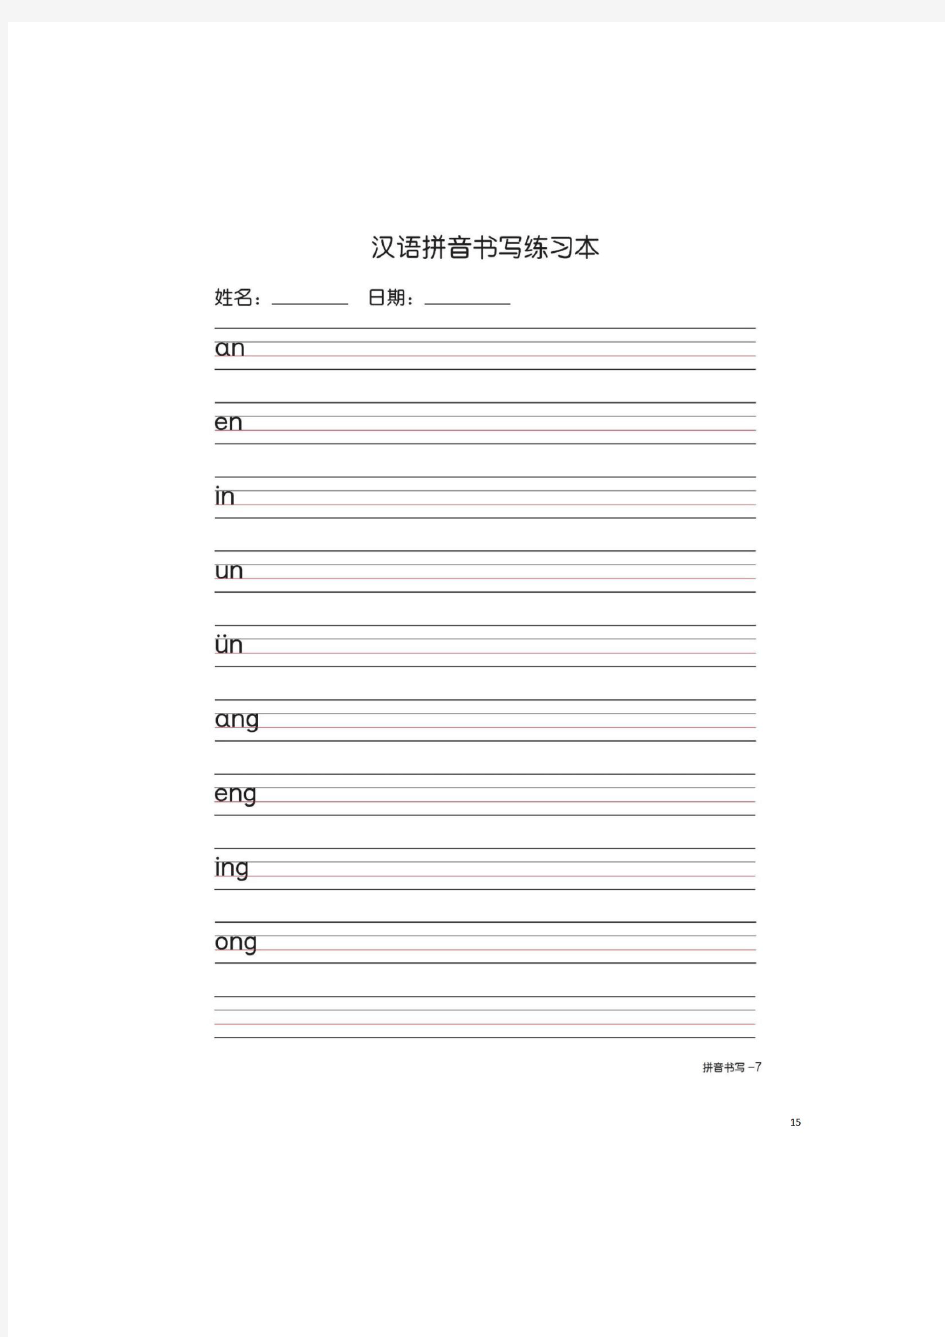 汉语拼音书写(打印版)